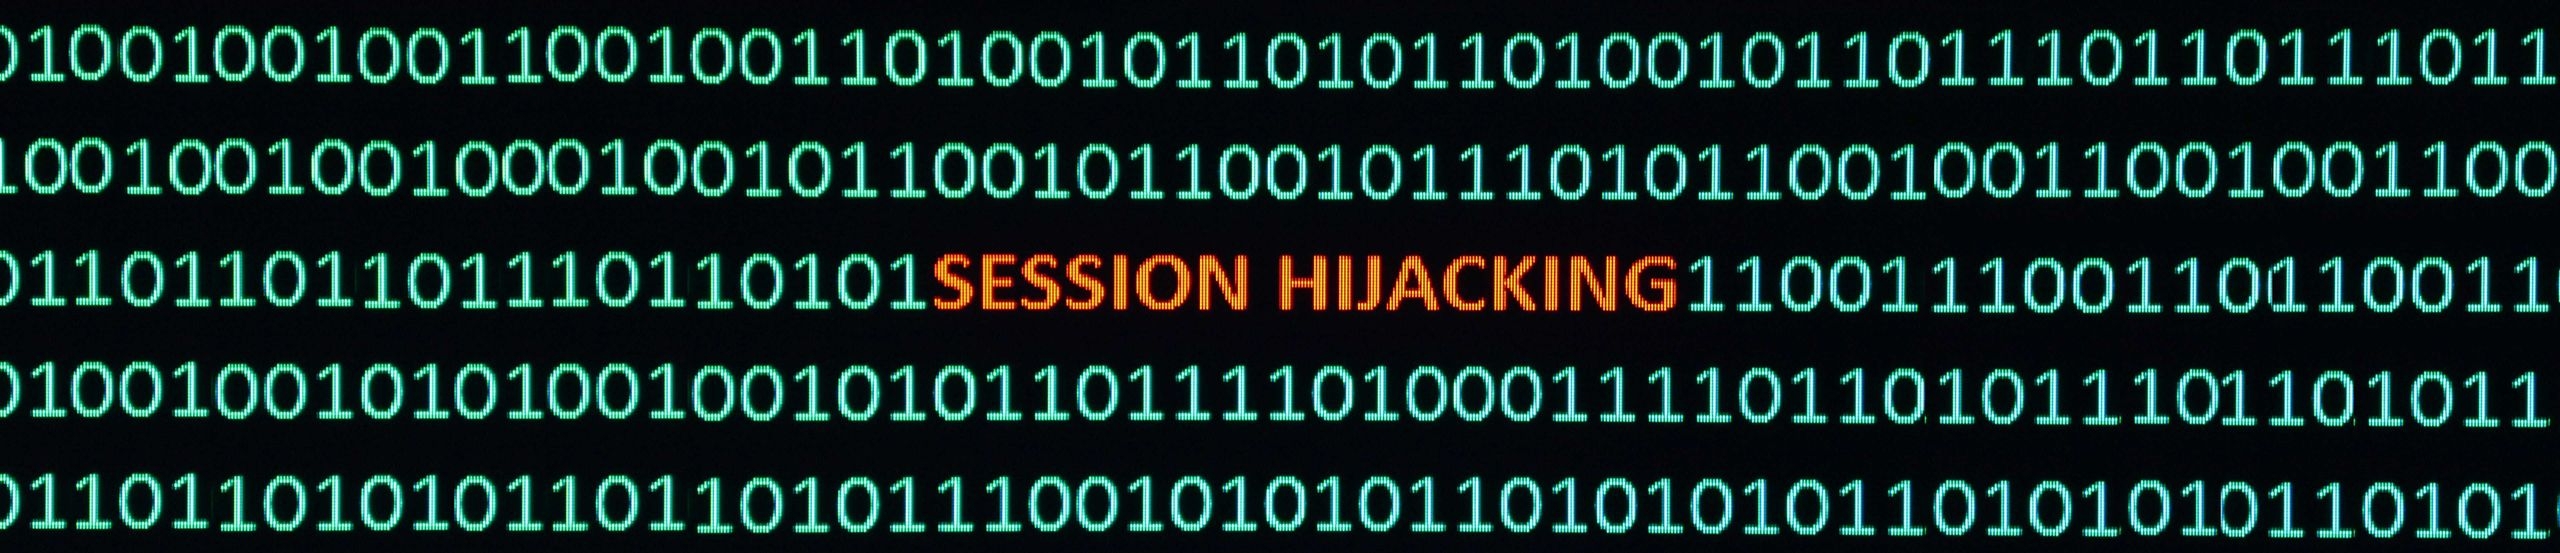 Screenshot mit Binärcode in Grün und dem Schriftzug Session Hijacking im Zentrum des Bildes in Orange